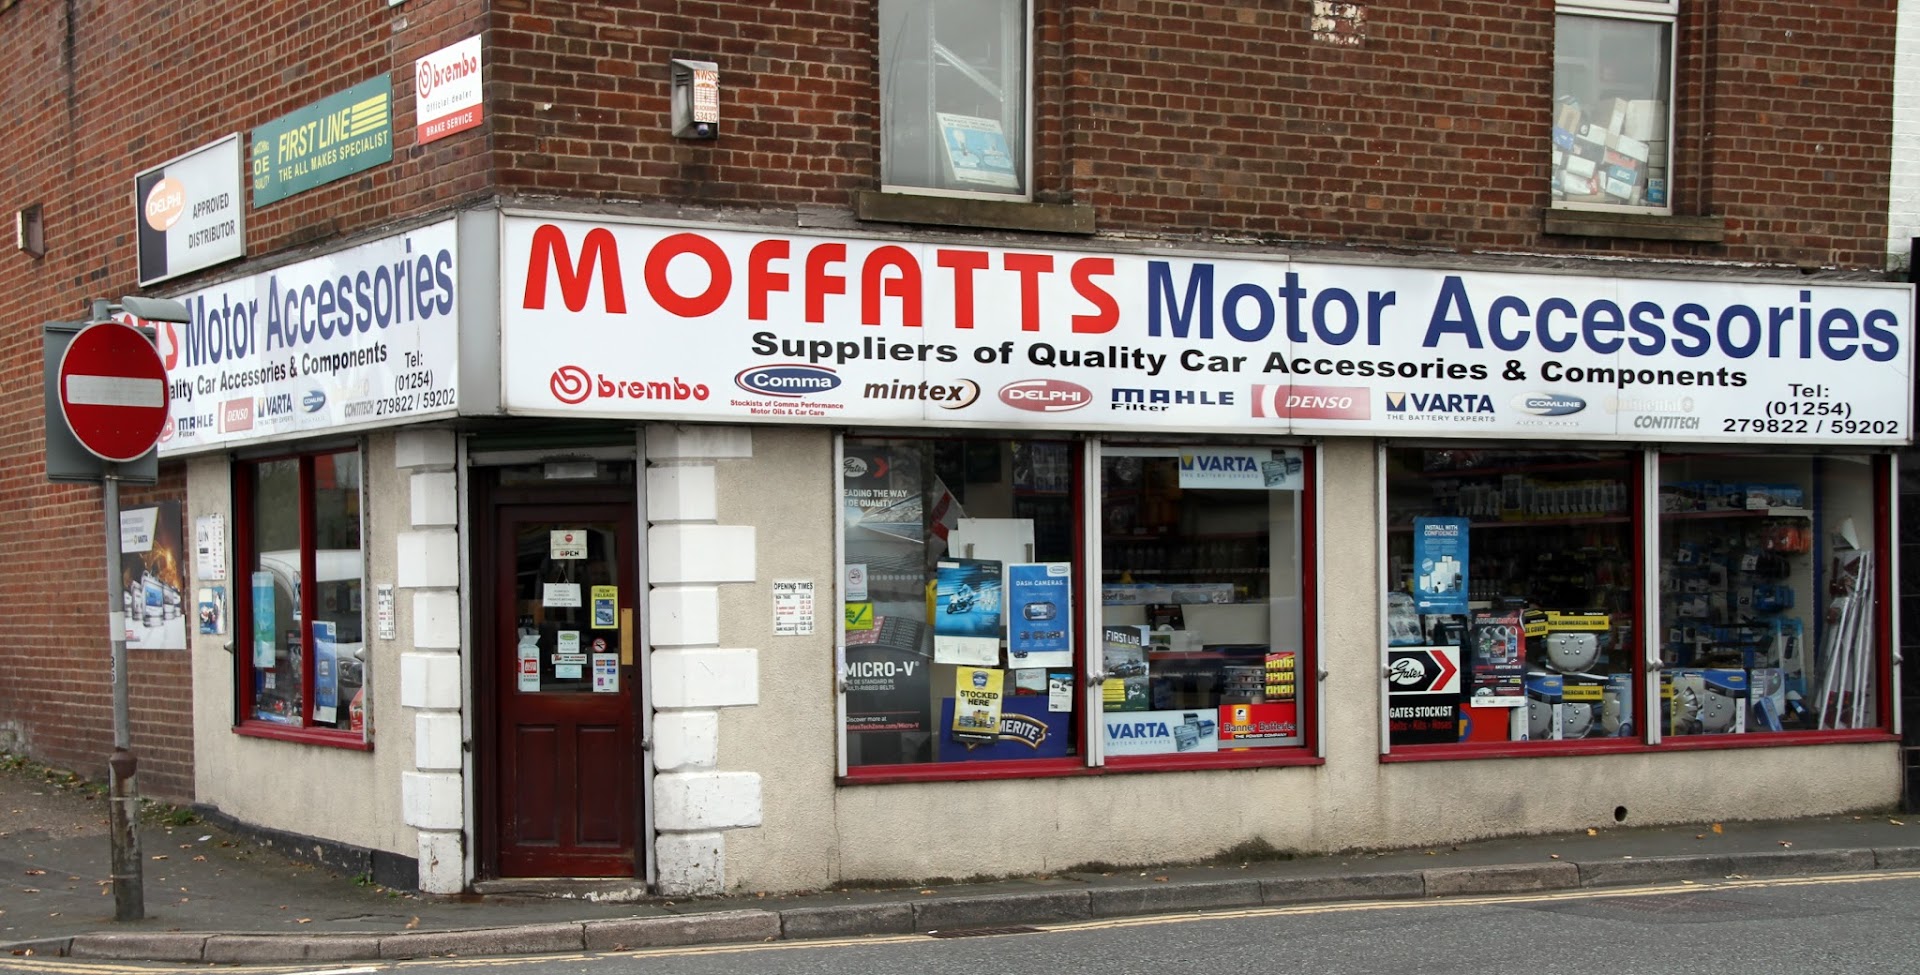 Moffatt's Motor Accessories